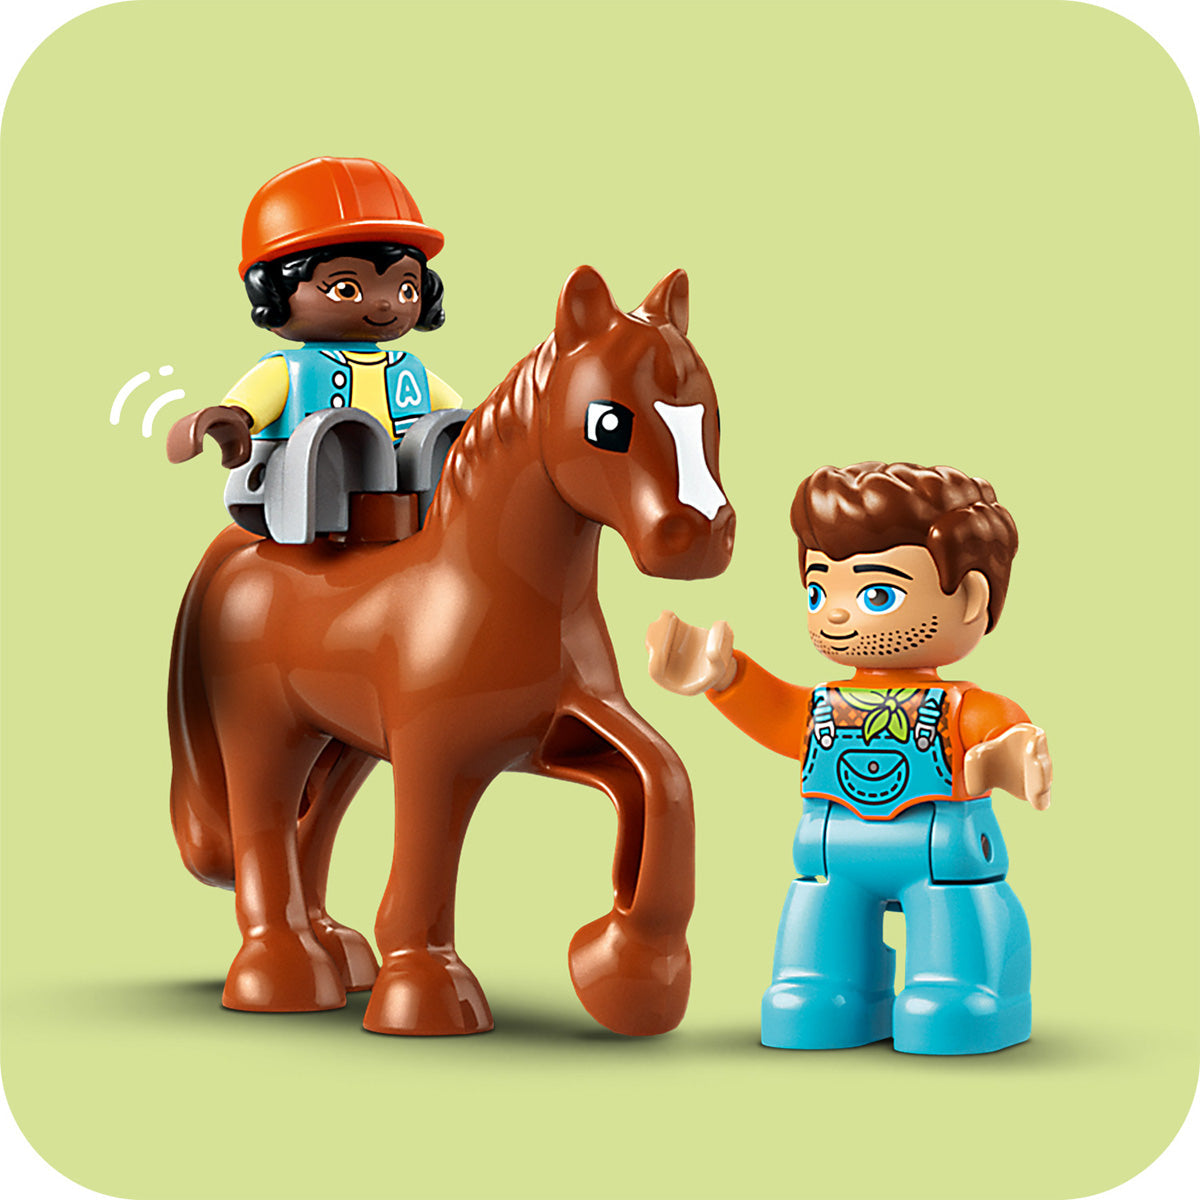 LEGO® DUPLO® - Skrb za živali na kmetiji (10416)